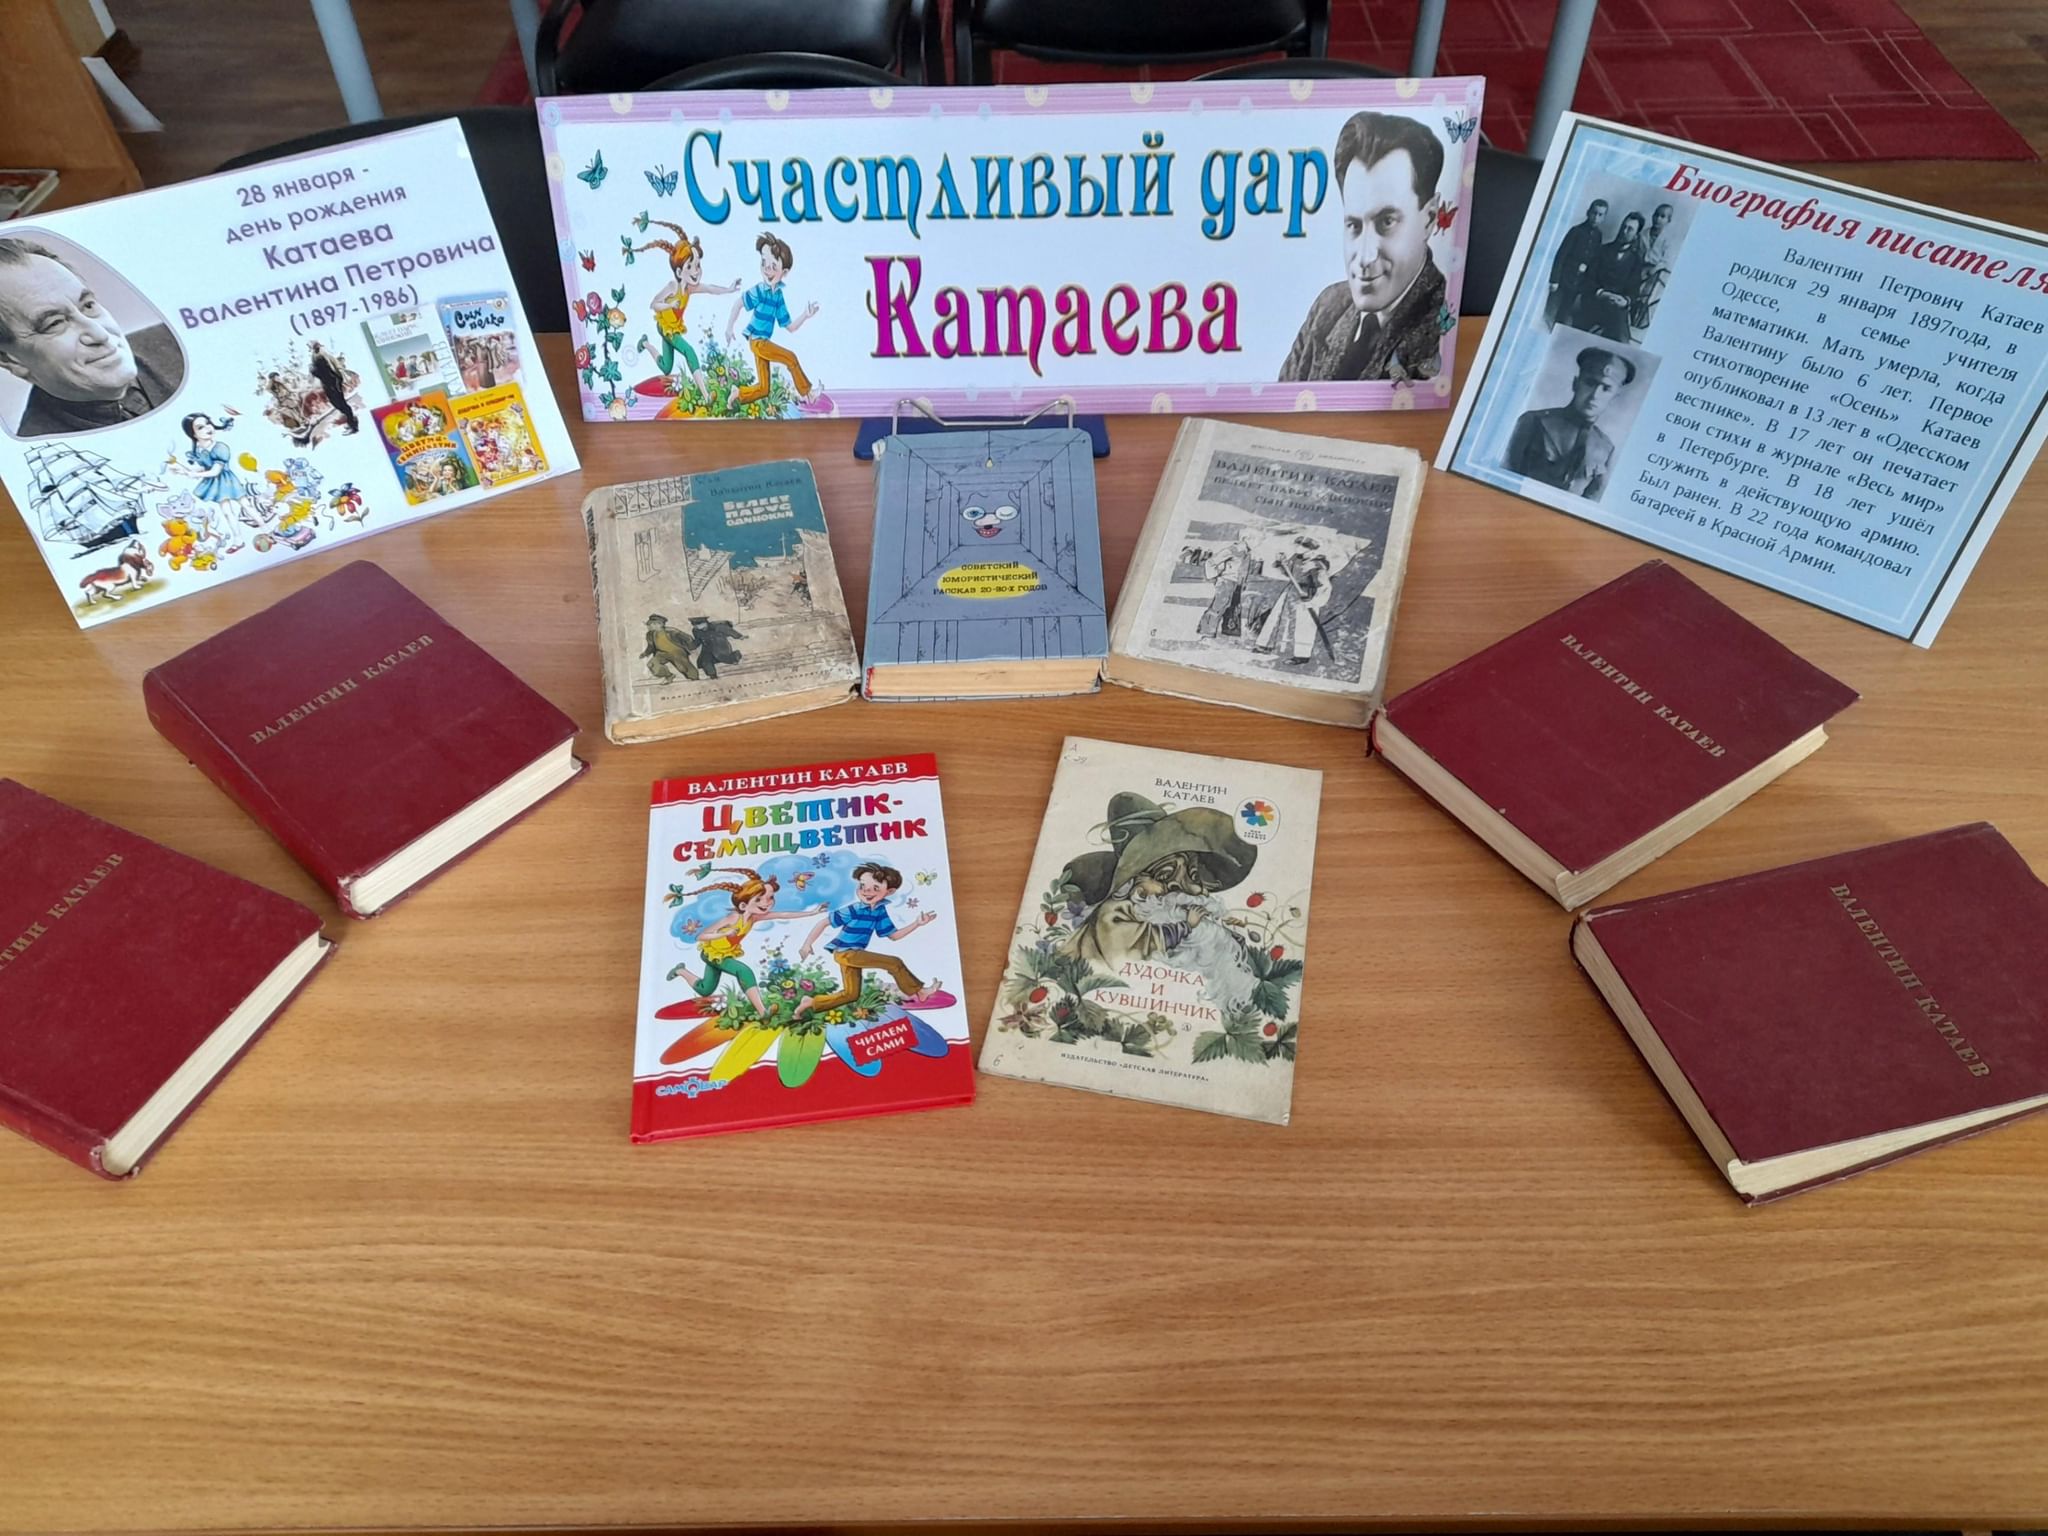 Катаев выставка в библиотеке